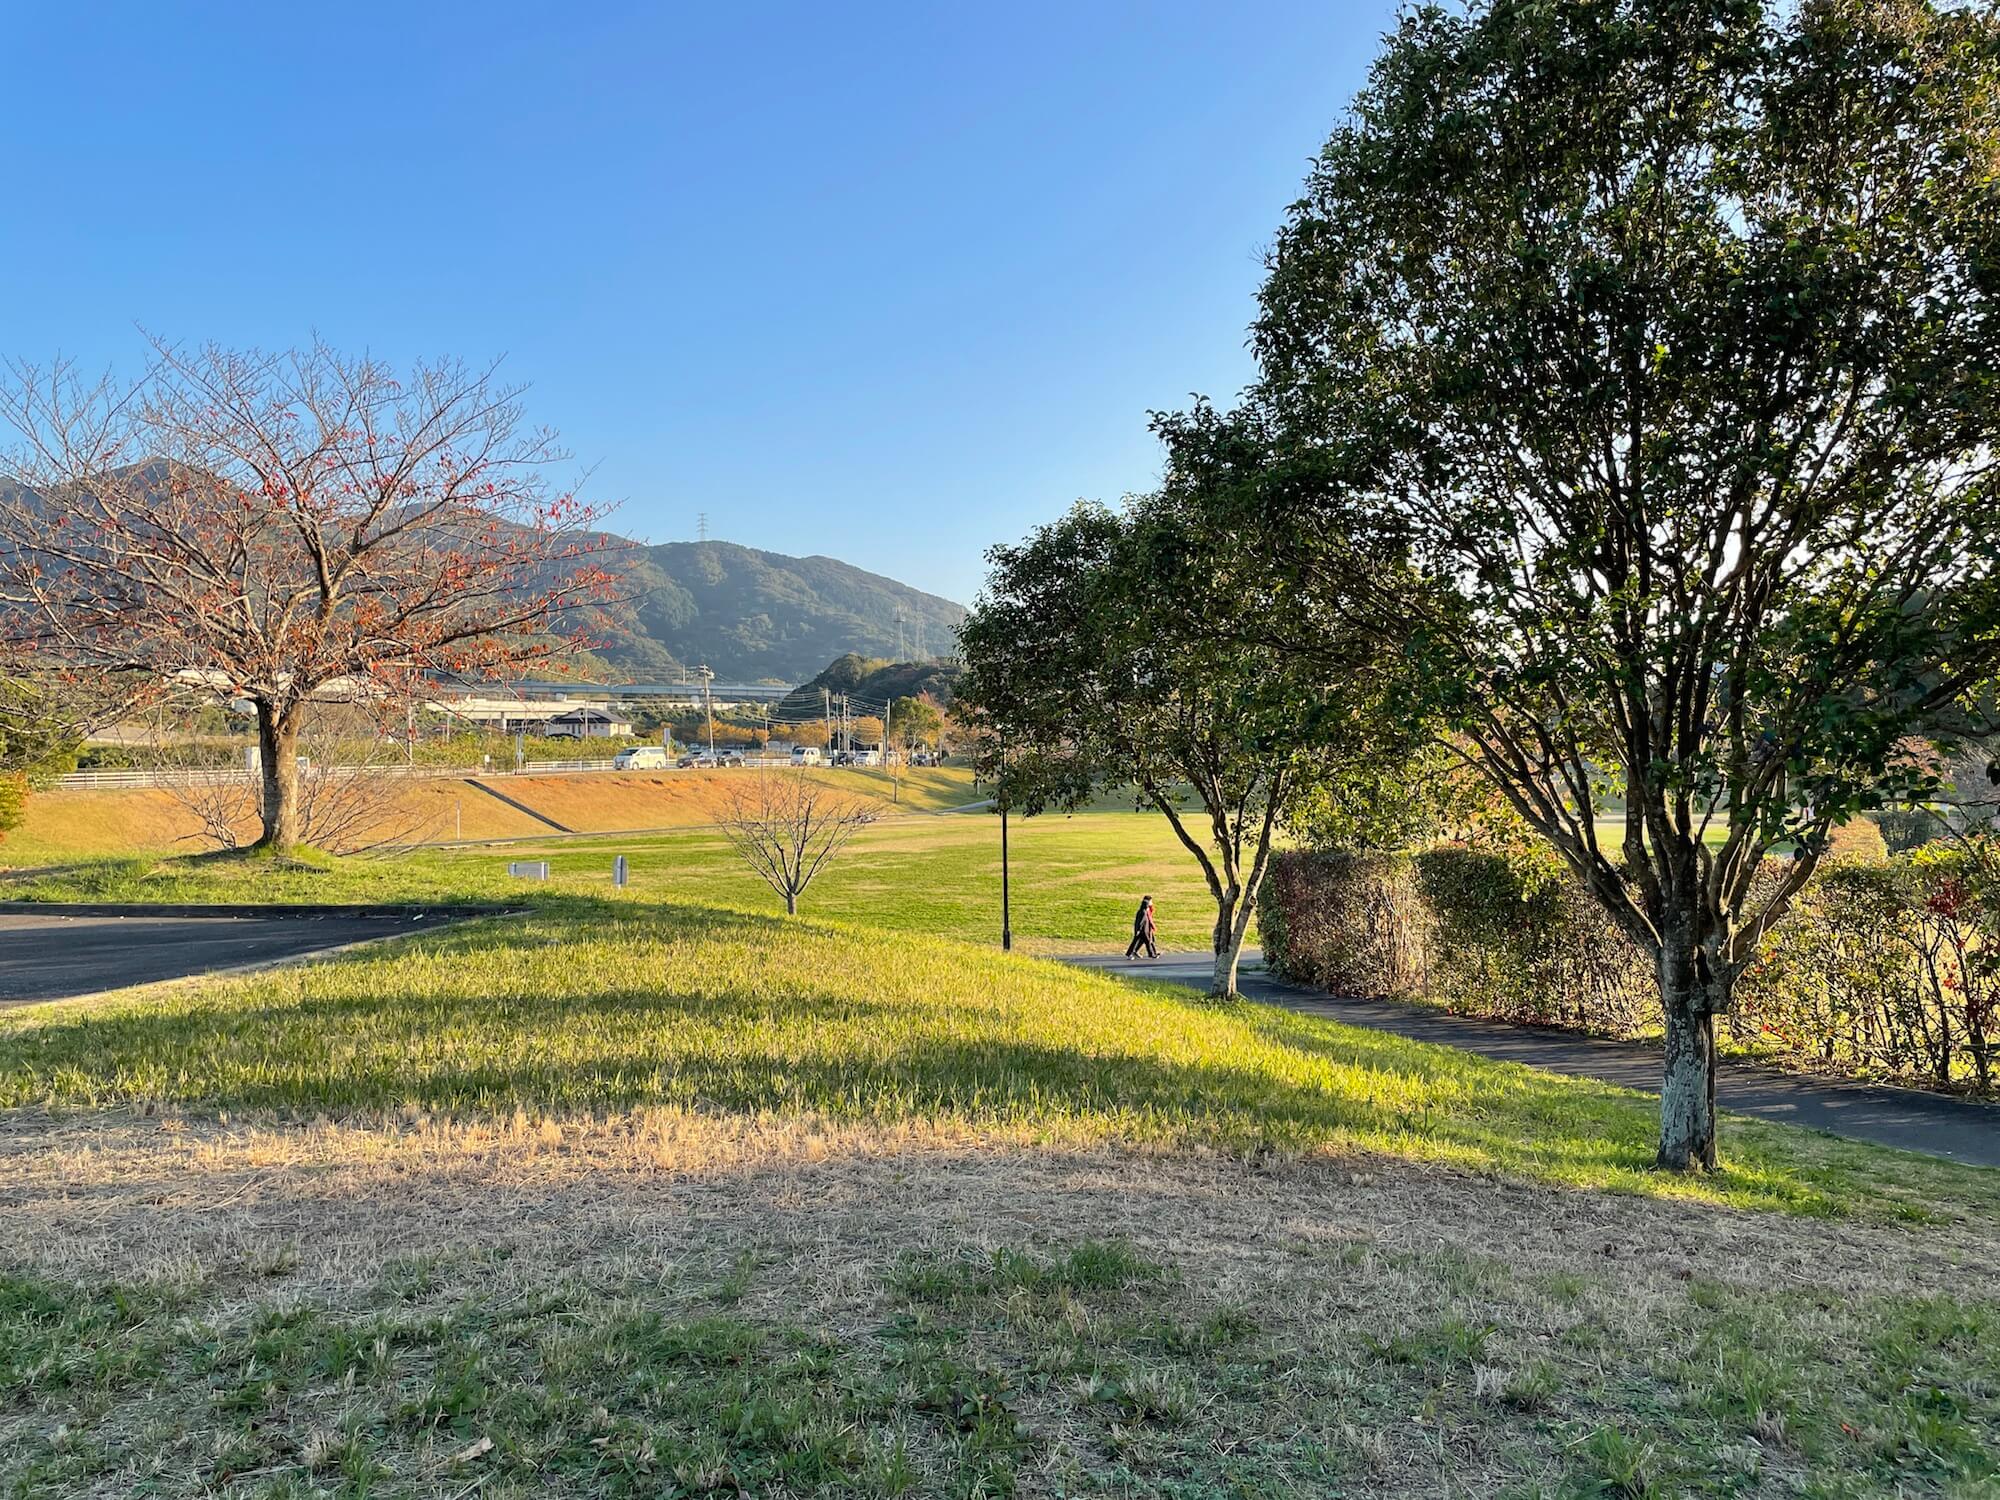 同じく北九州市住宅供給公社の団地リノベ、こちらは家族で楽しめるプールやスポーツジムを備えた大きな公園「志井公園」のすぐ近くにある、緑豊かな環境が魅力の団地。